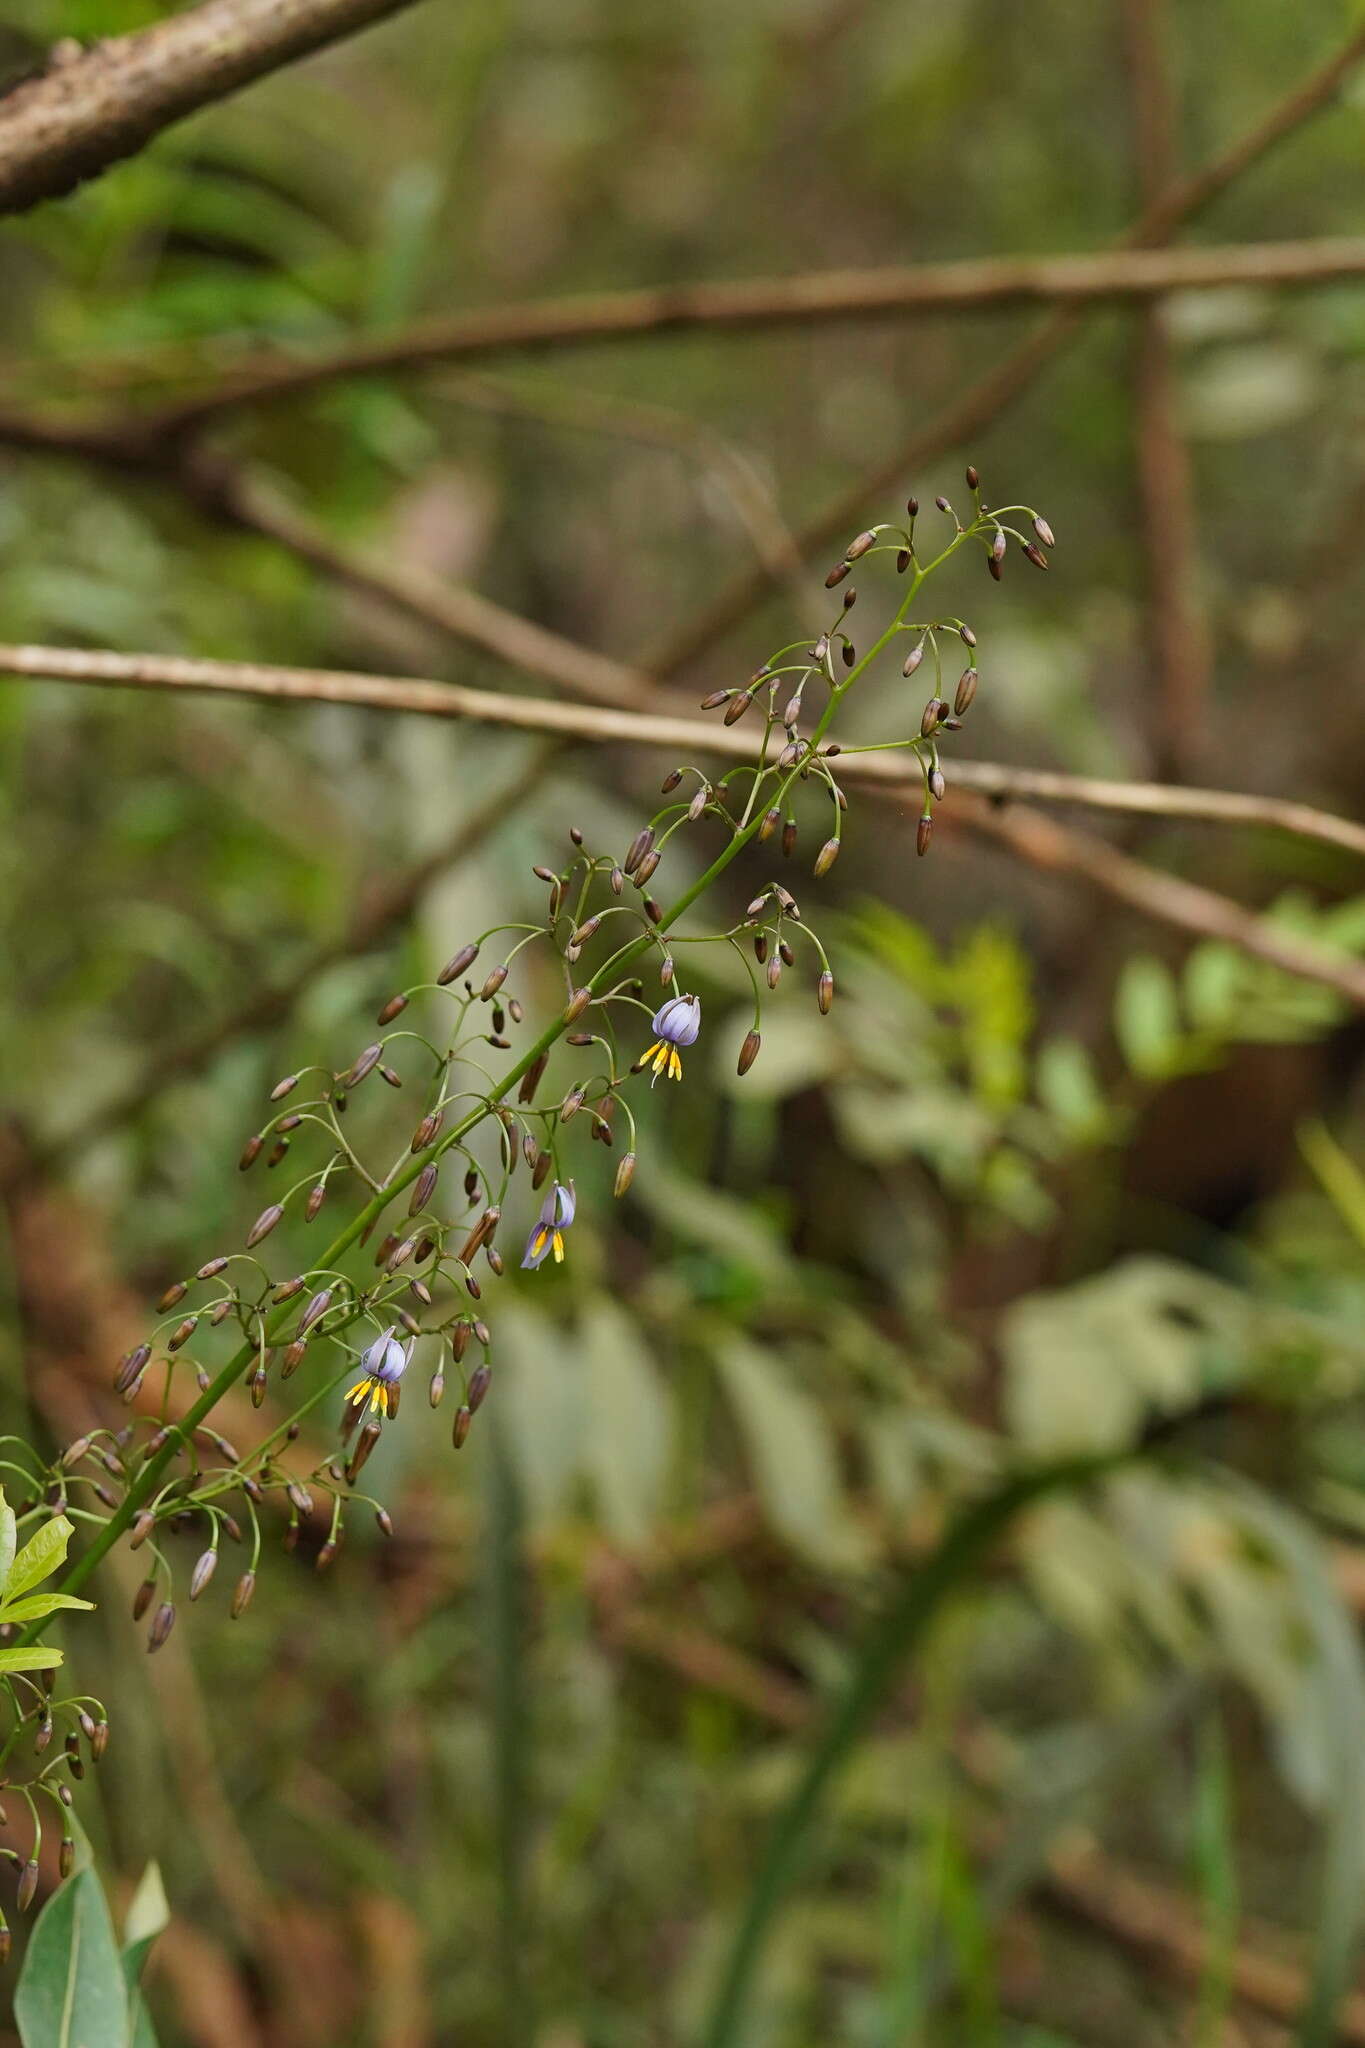 Image of Dianella tasmanica Hook. fil.